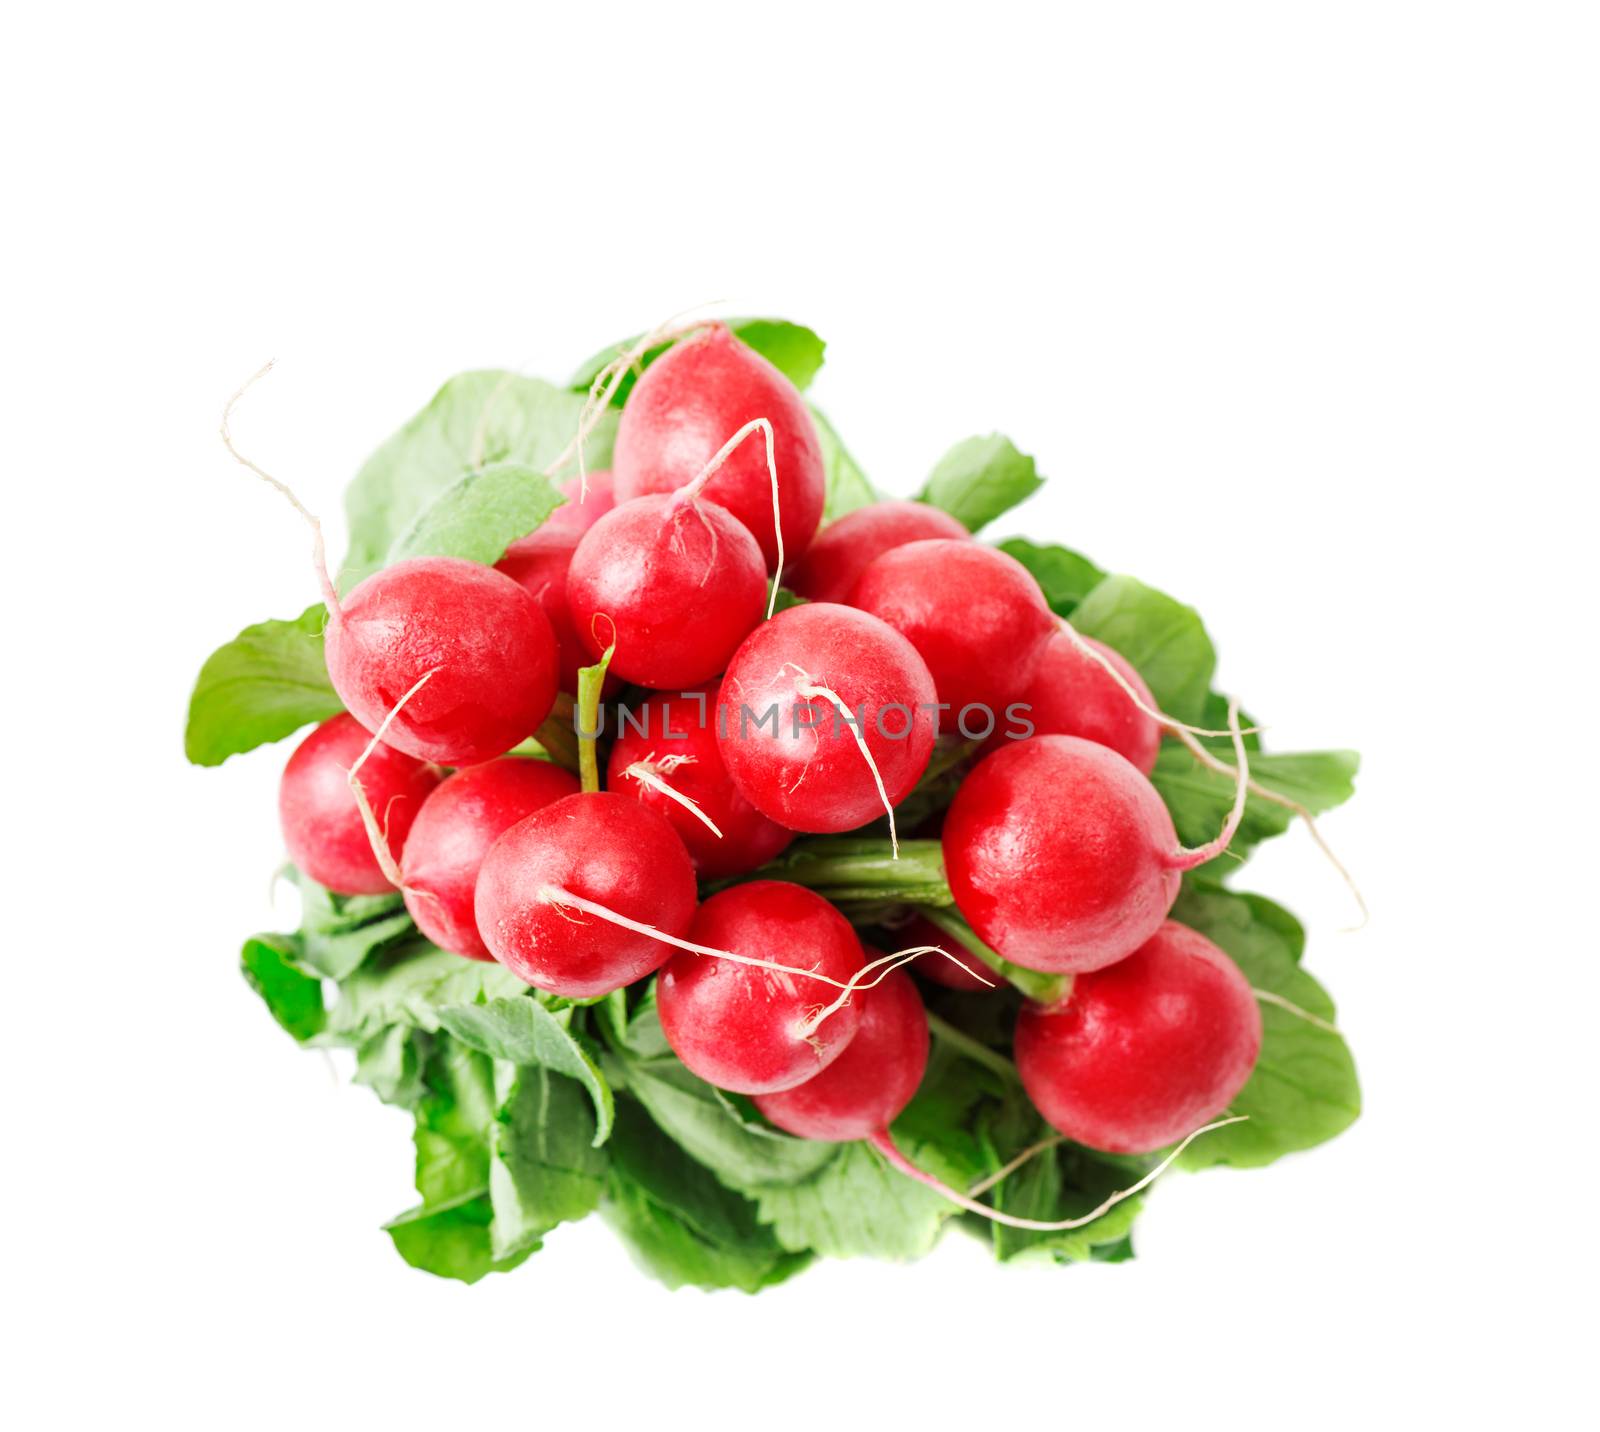 Fresh red radishes isolated on white background